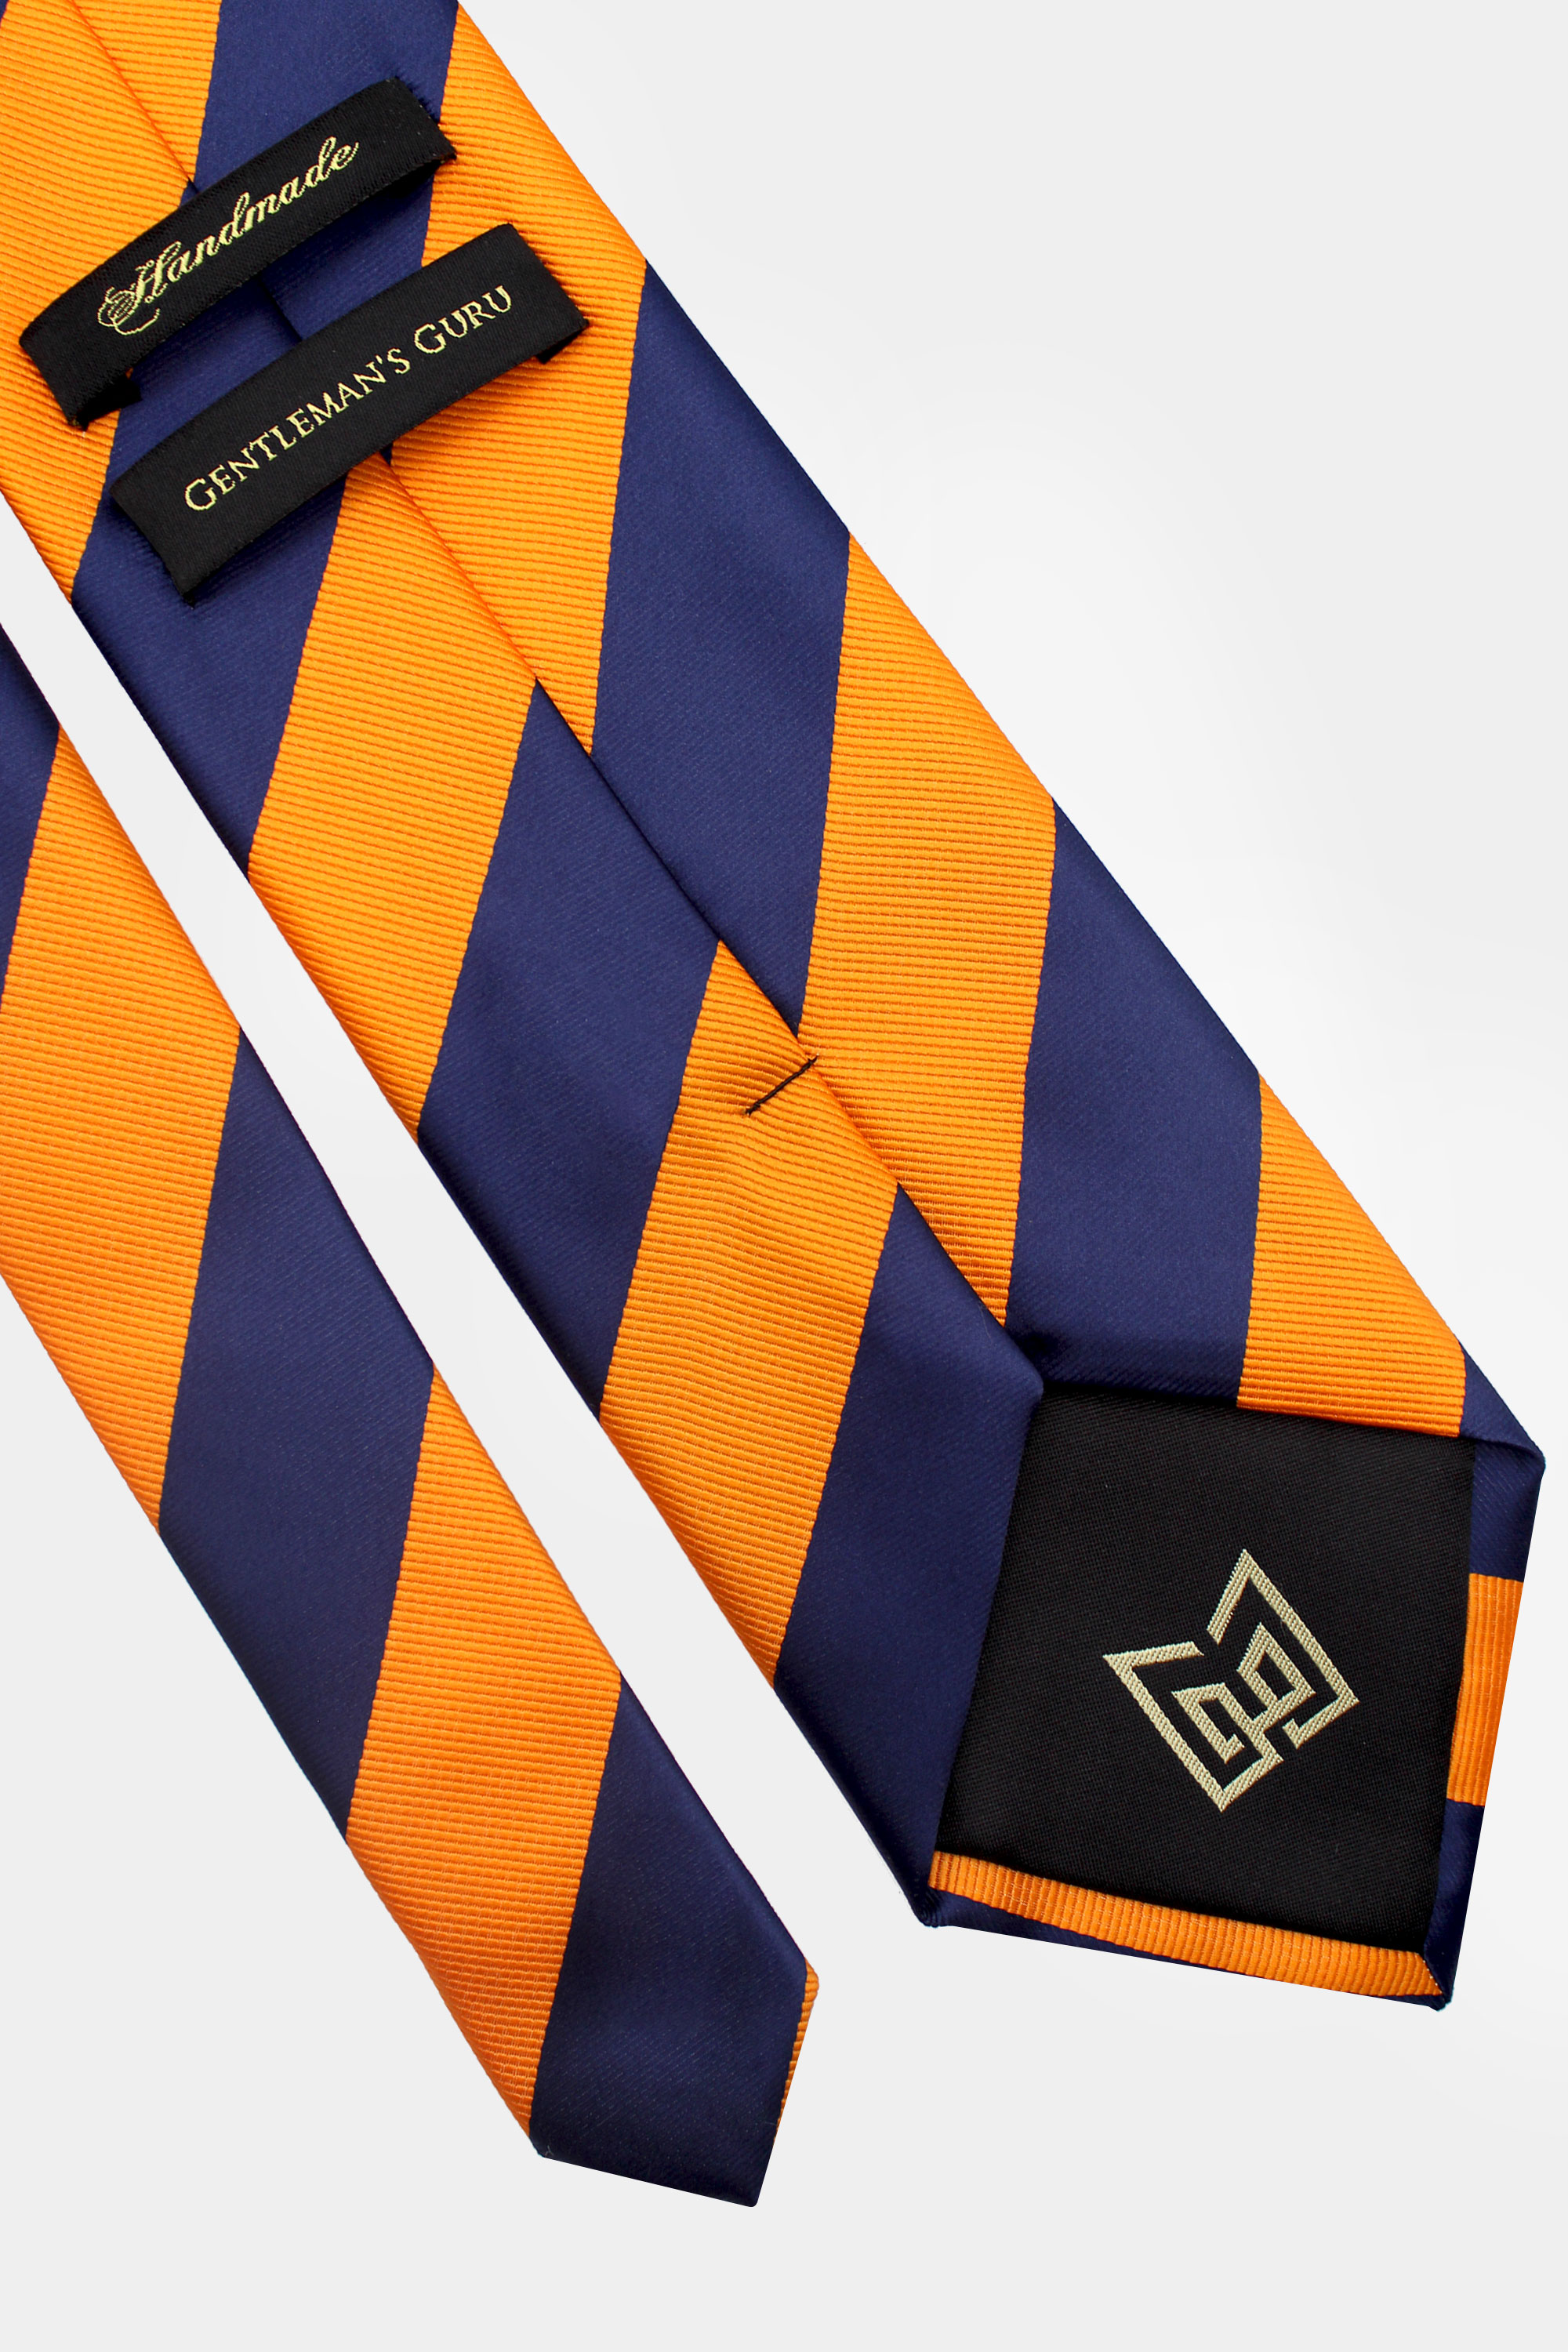 Navy-Blue-and-Orange-Striped-Tie-from-Gentlemansguru.com